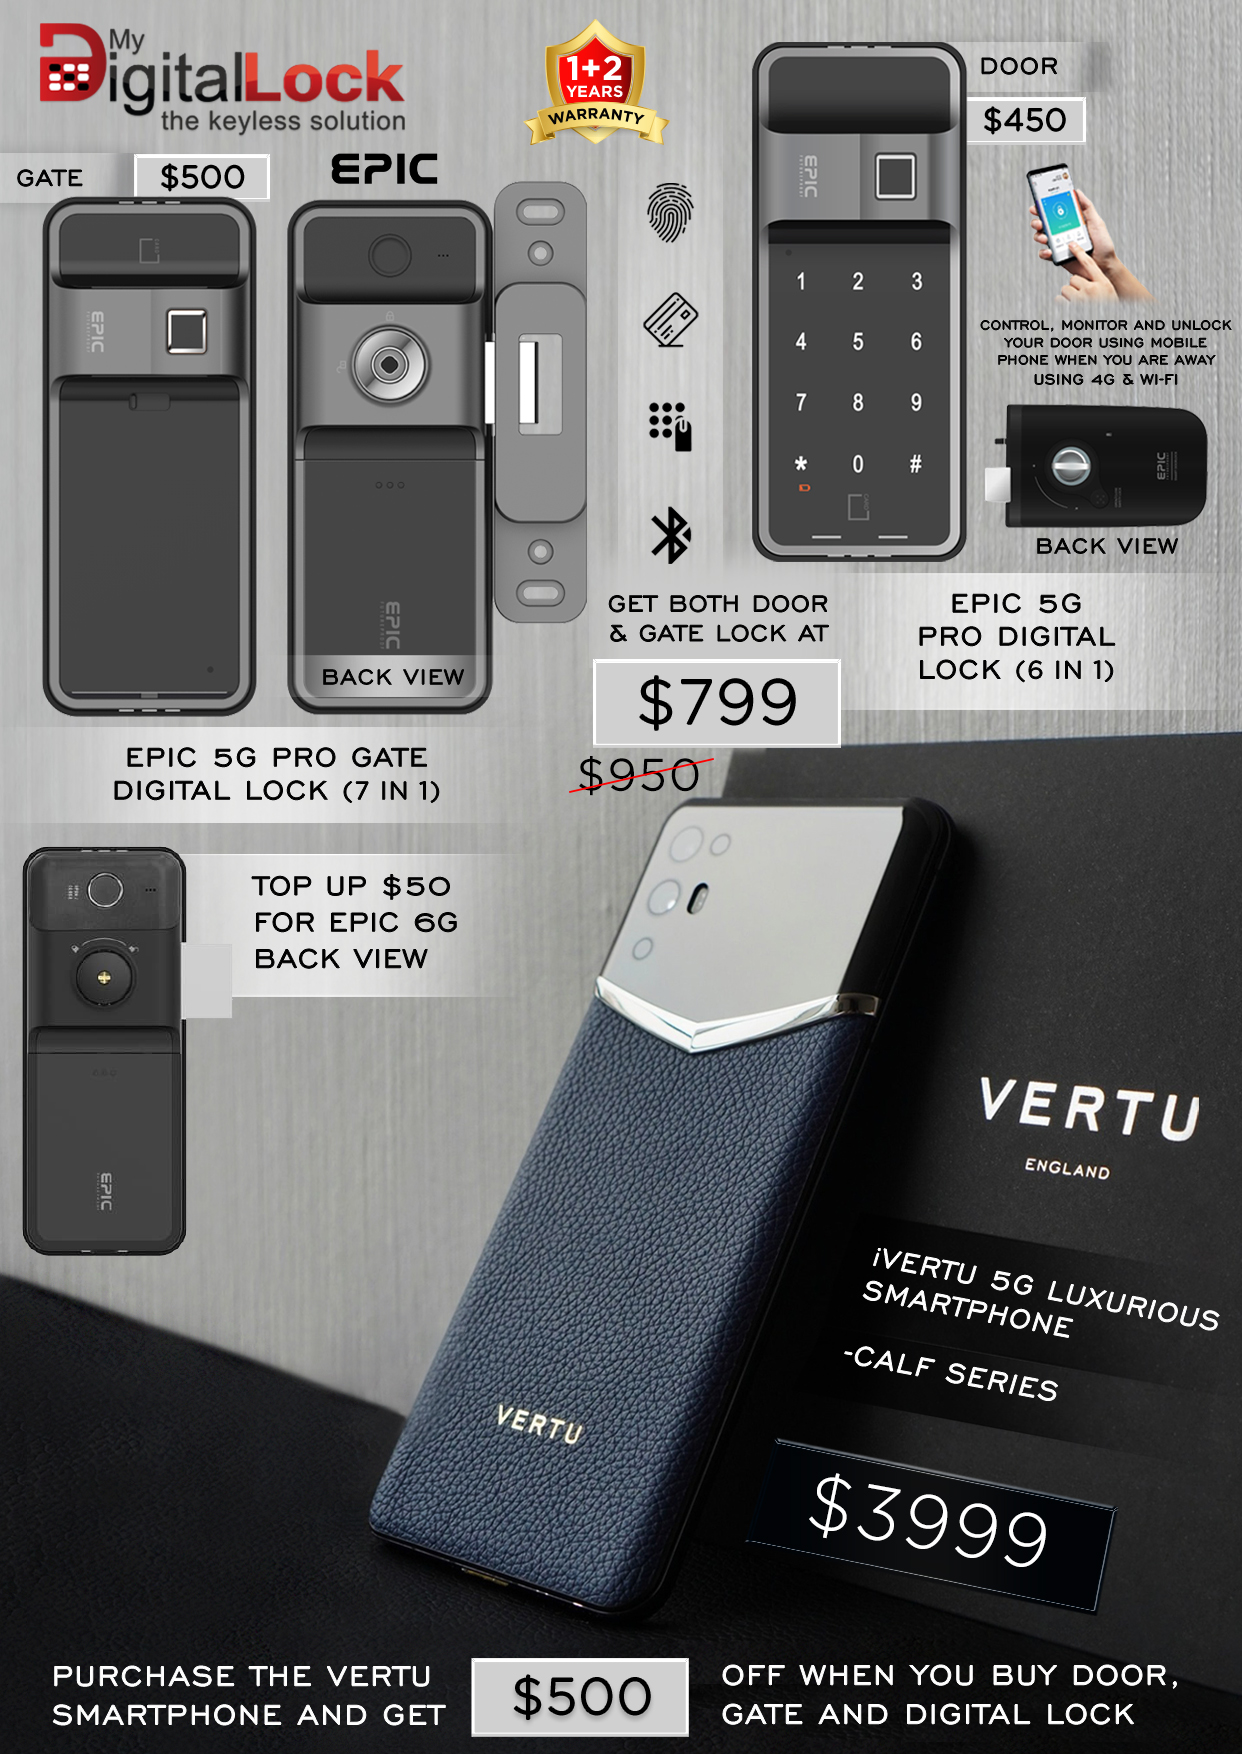 Best Selling Rim Digital Lock and iVertu Phone (Calf Series)